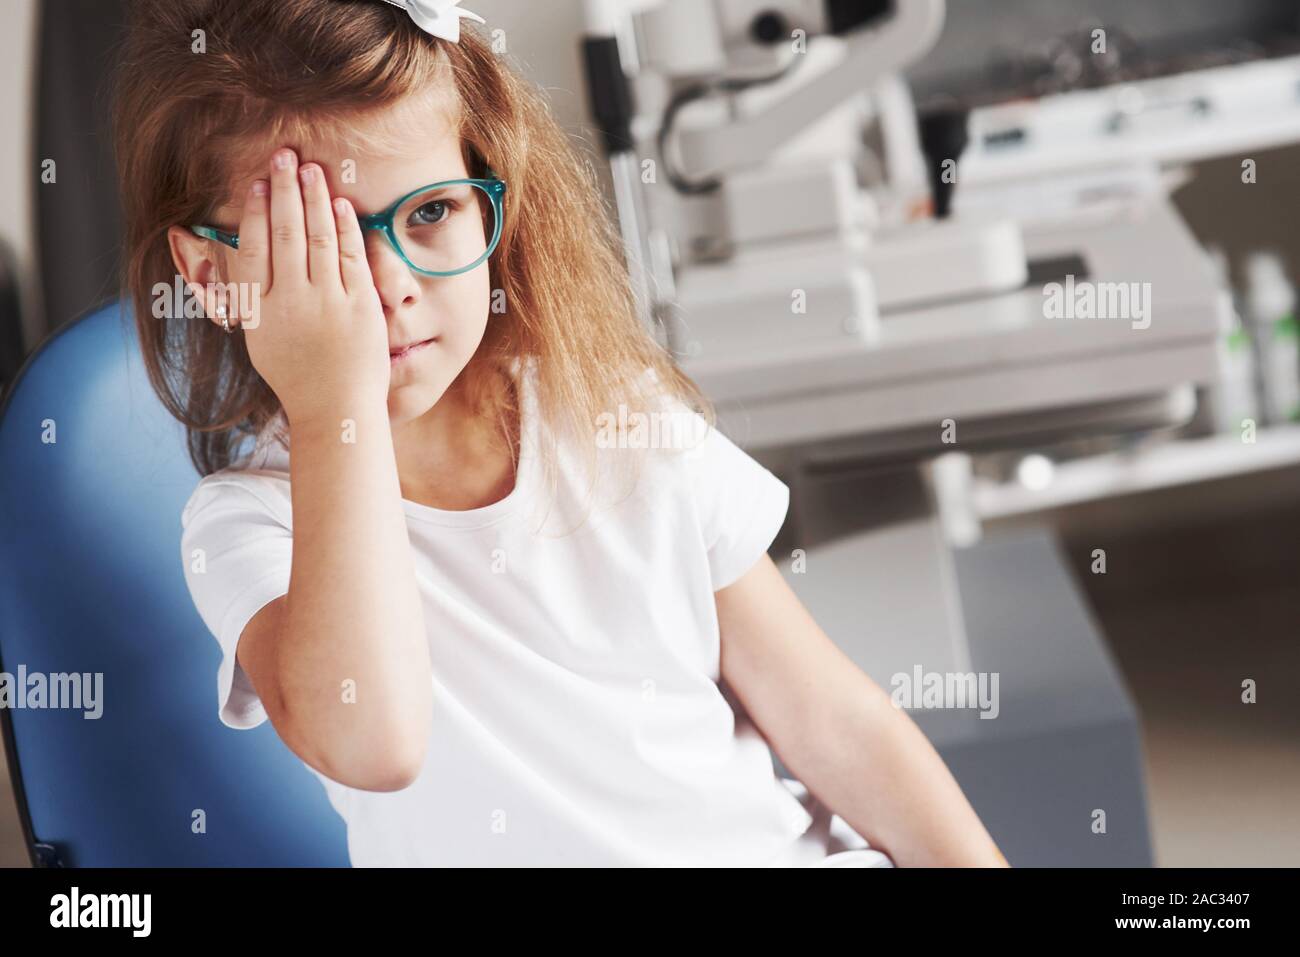 Das rechte Auge mit der Hand. Kleines Mädchen seine Vision mit neuer Brille prüfen Stockfoto